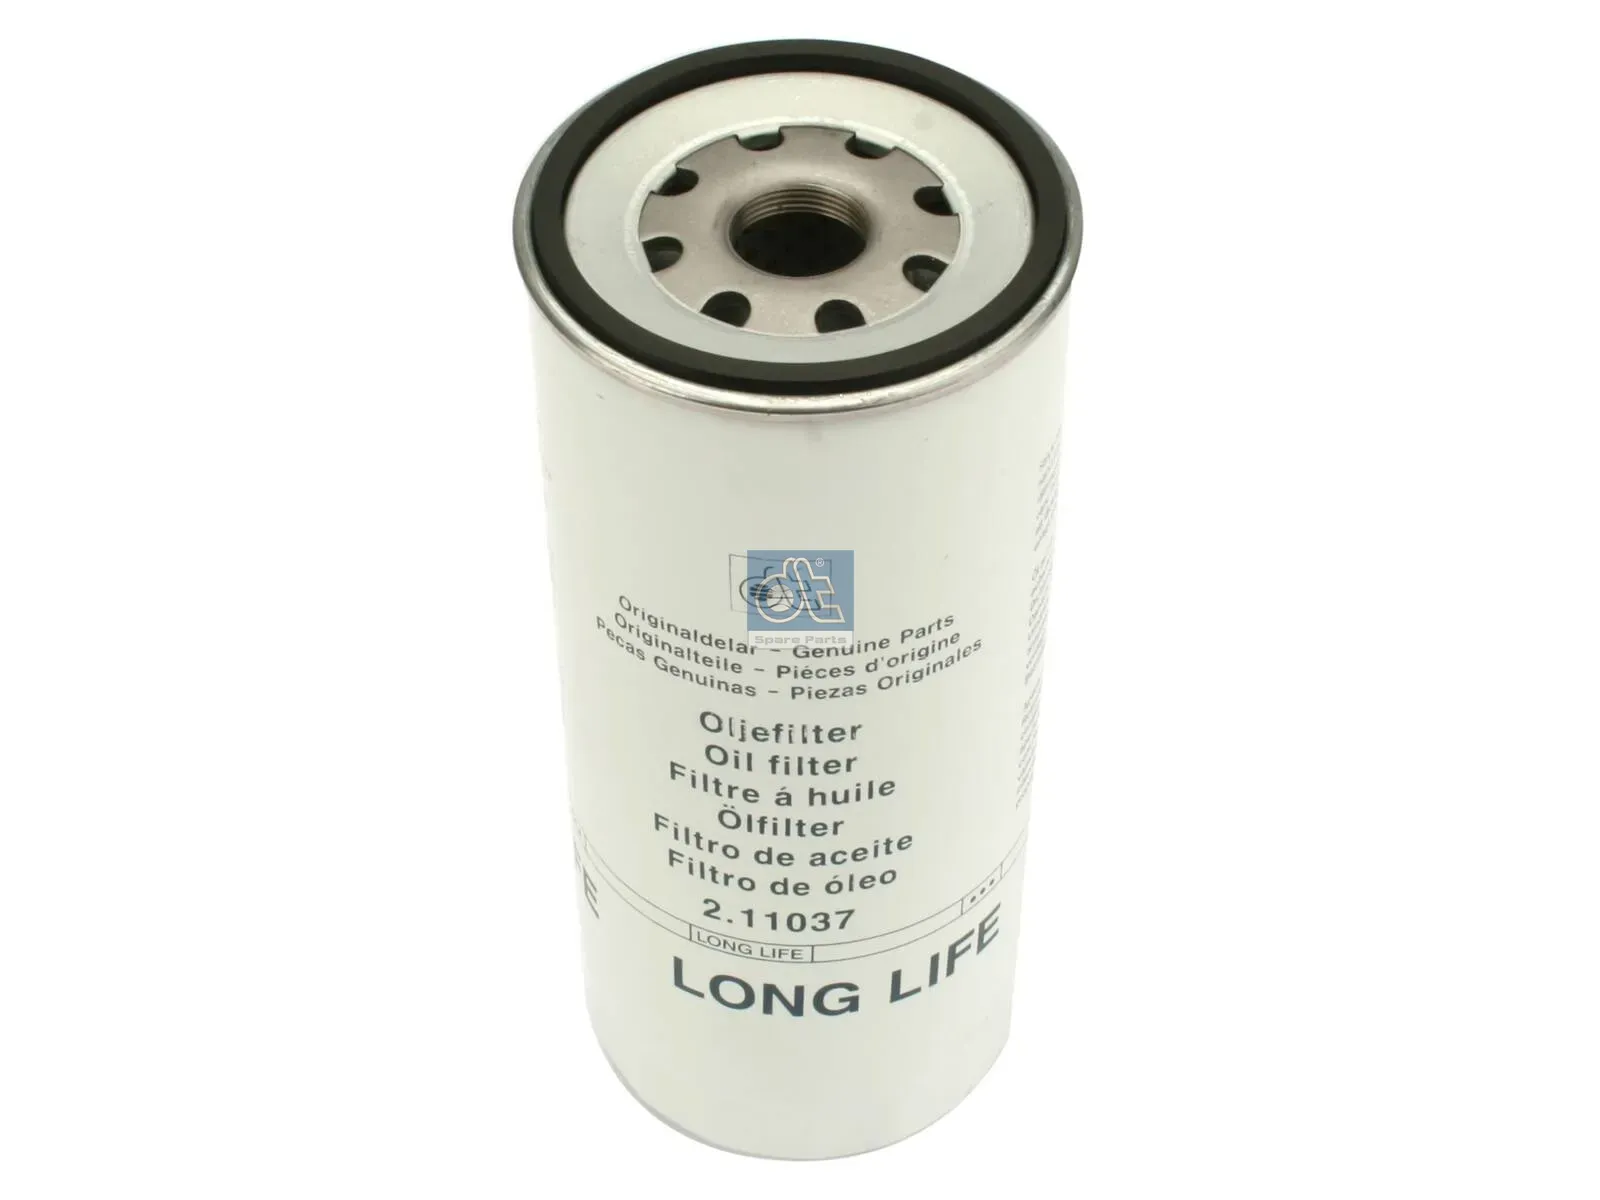 Oil filter, long life